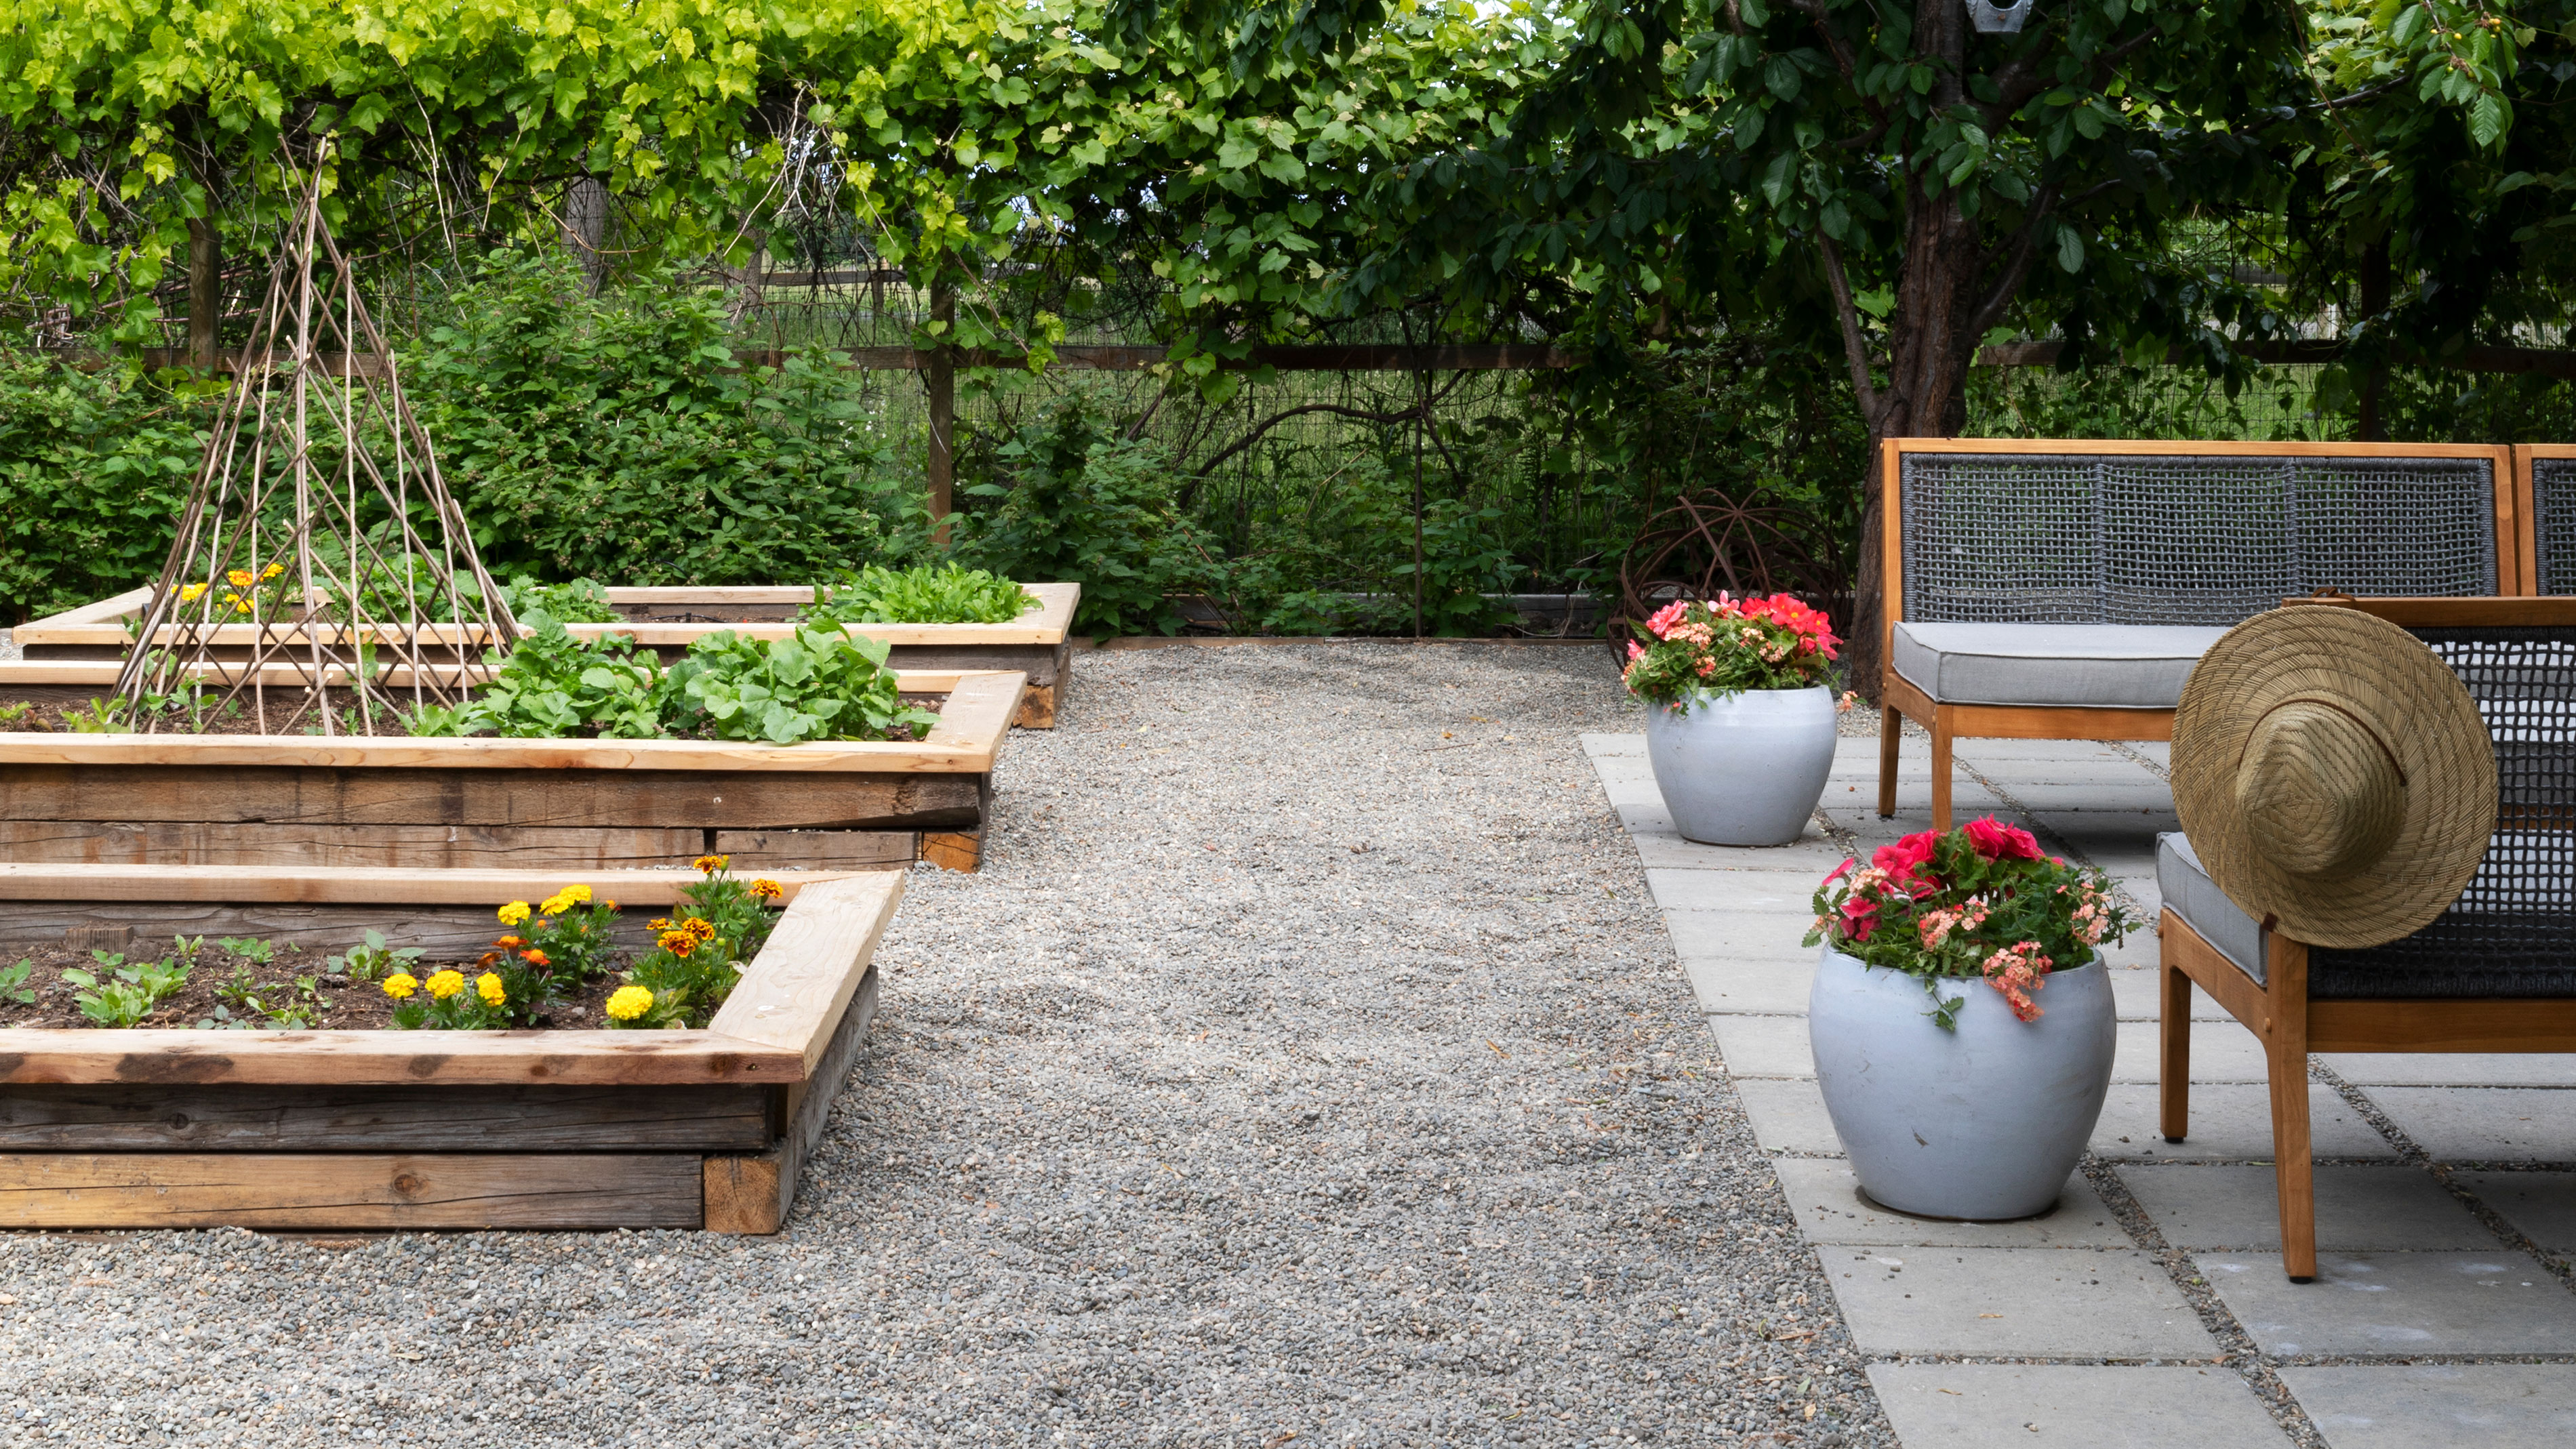 Backyard Ideas On A Budget Create An, How To Landscape A Backyard On Budget